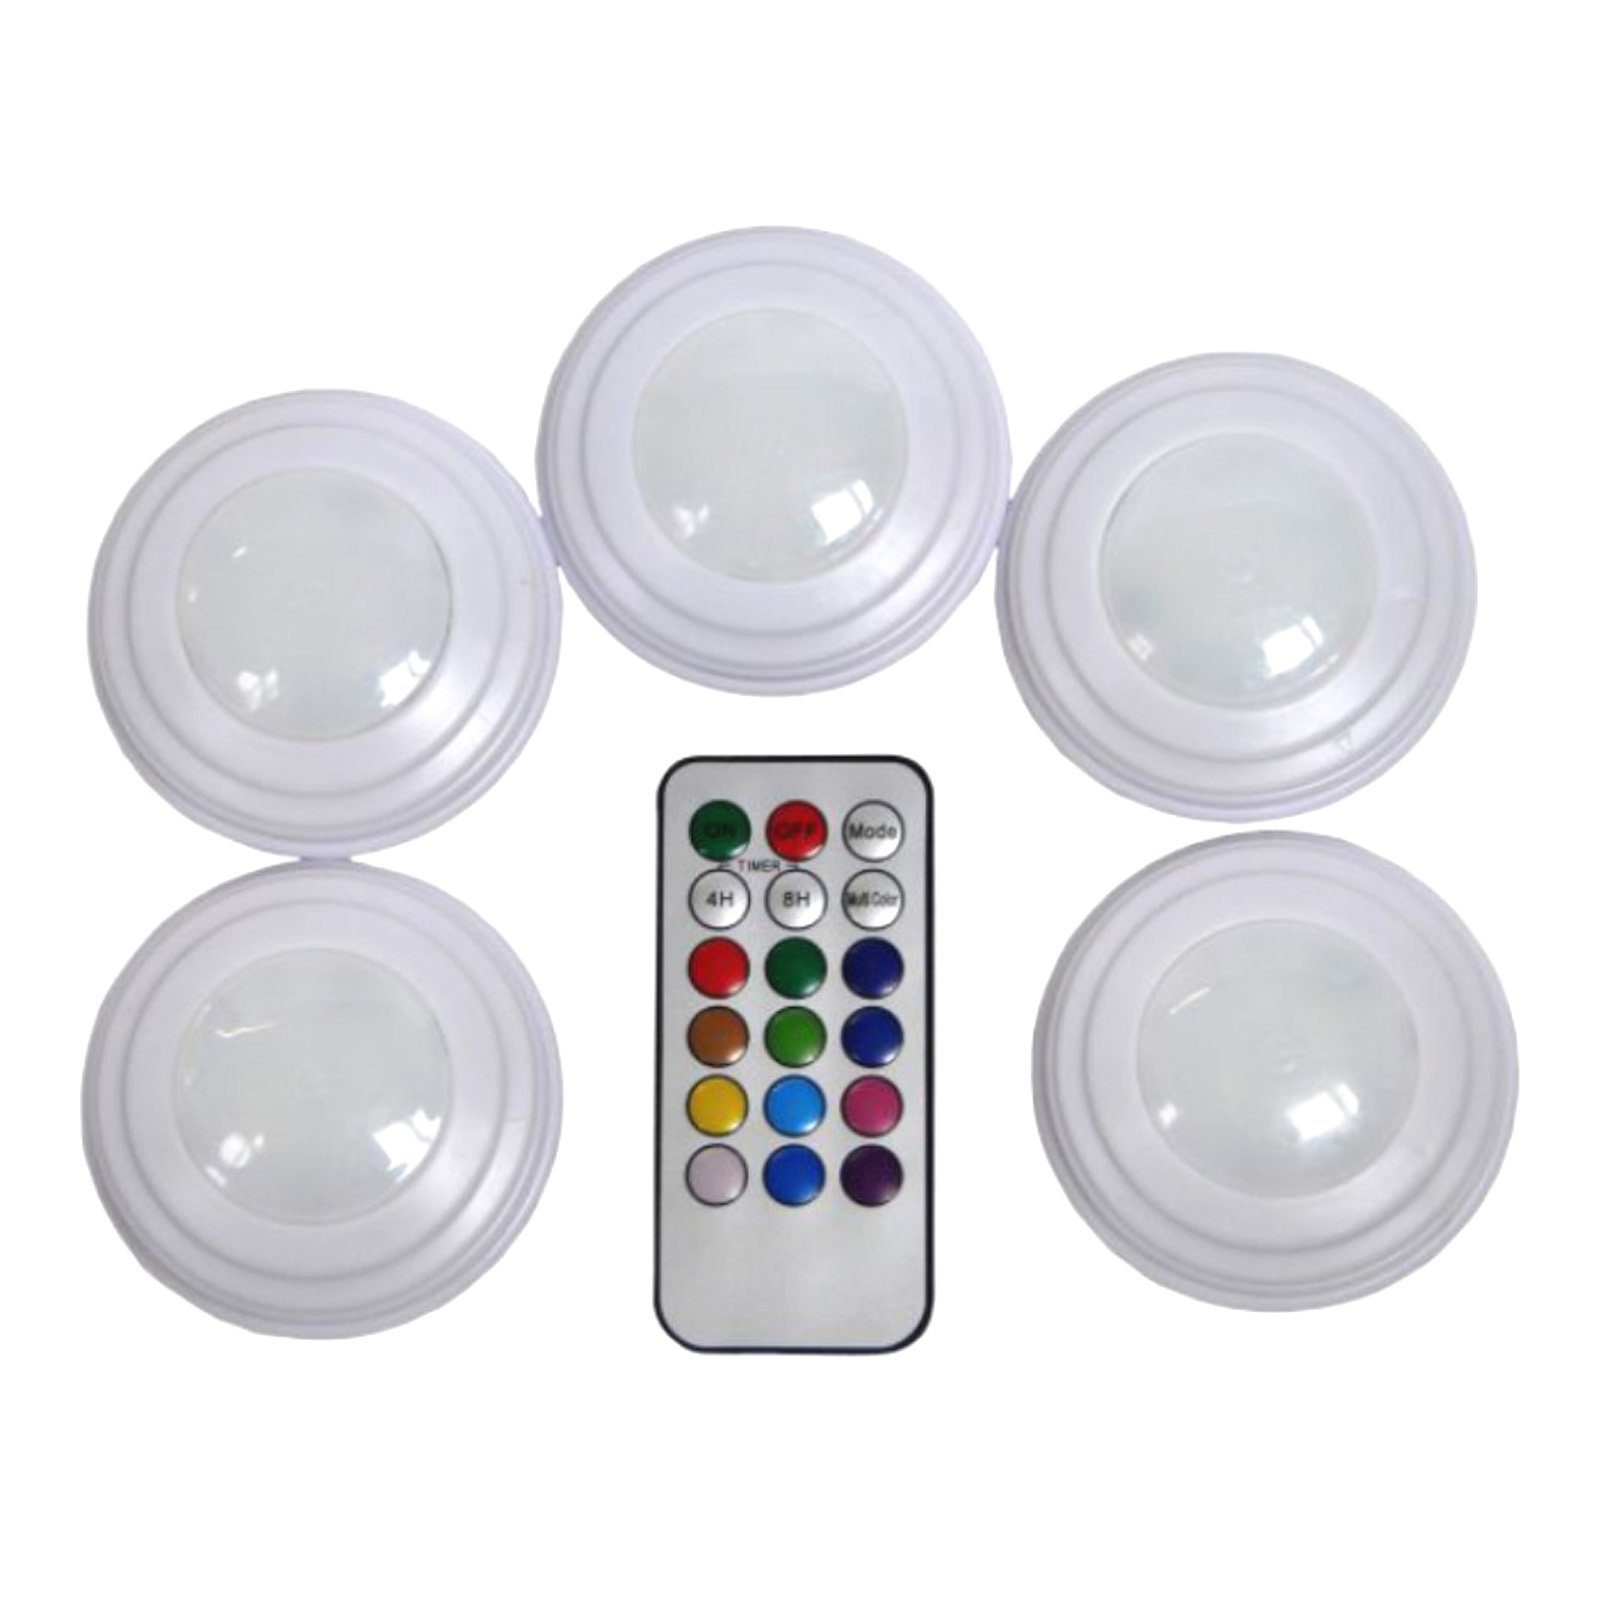 5x Dimmbar mit LED Push Unterbauleuchte 12 LED Farbwechsler, Schranklampe Batterie Schrankleuchte, Fernbedienung Lampe integriert, fest HAC24 Farben